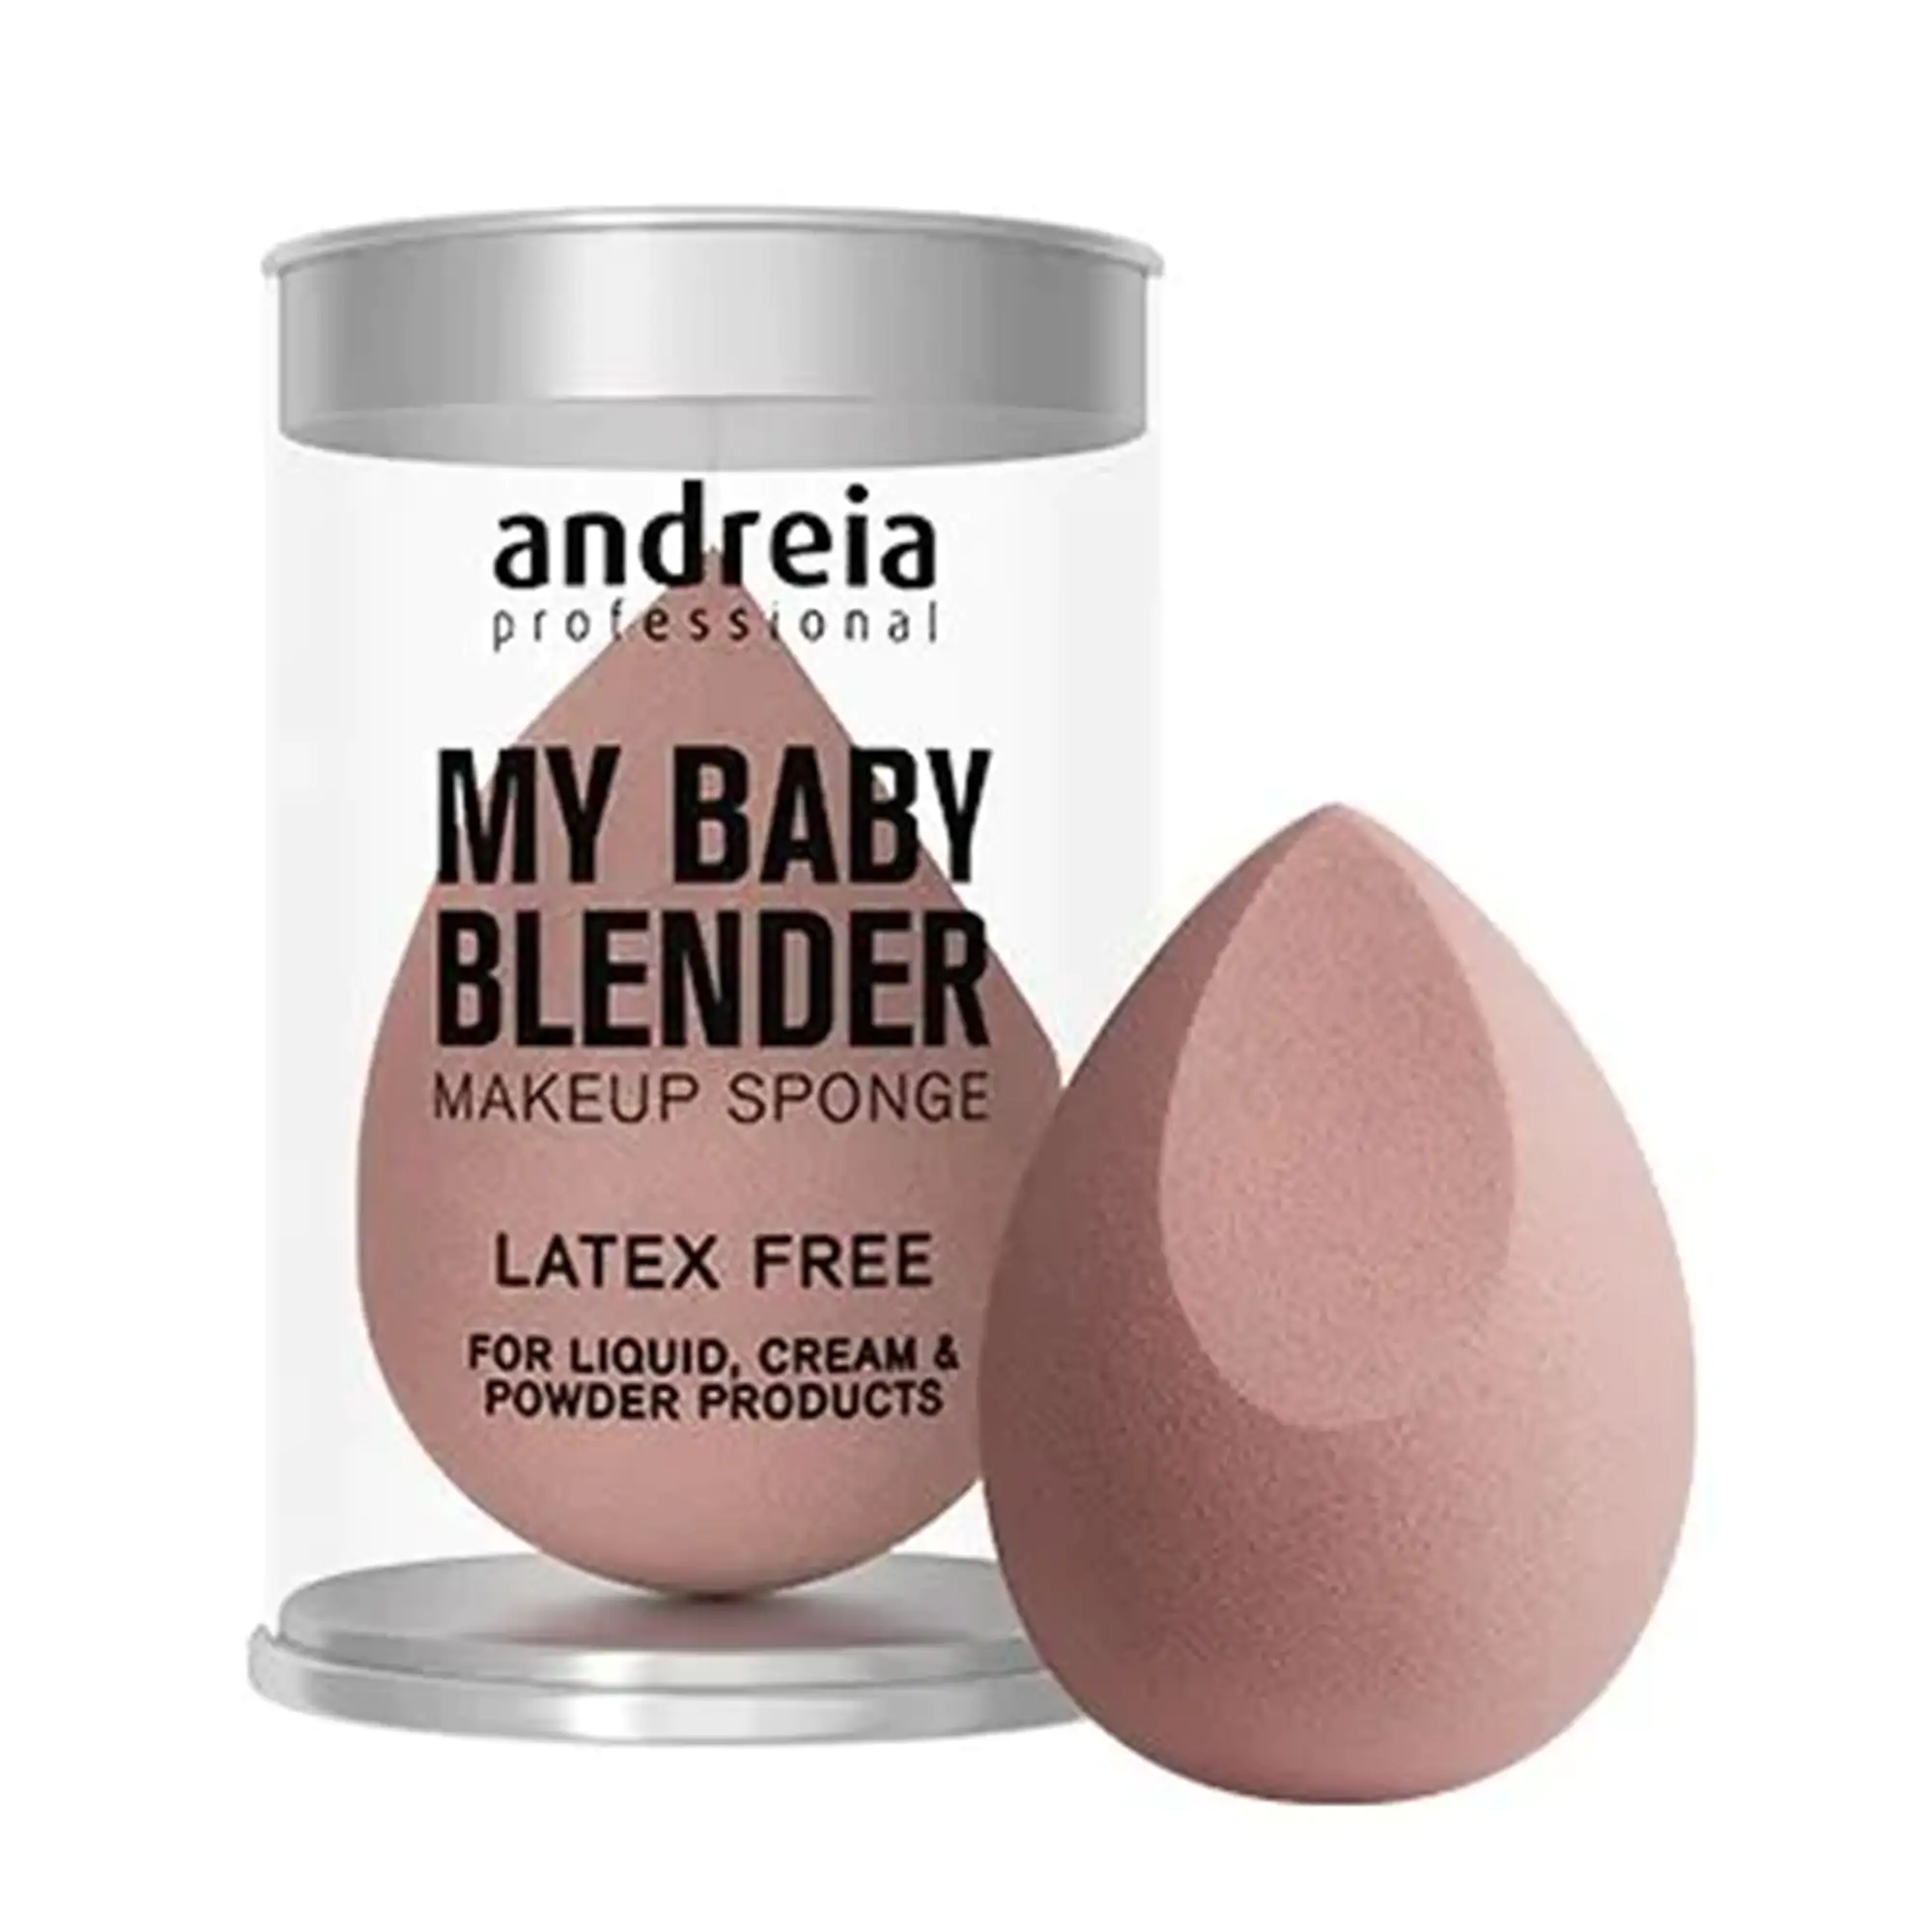 Andreia My Baby Blender Make-Up Sponge | Femme Fatale - Femme Fatale - Andreia My Baby Blender Make-Up Sponge